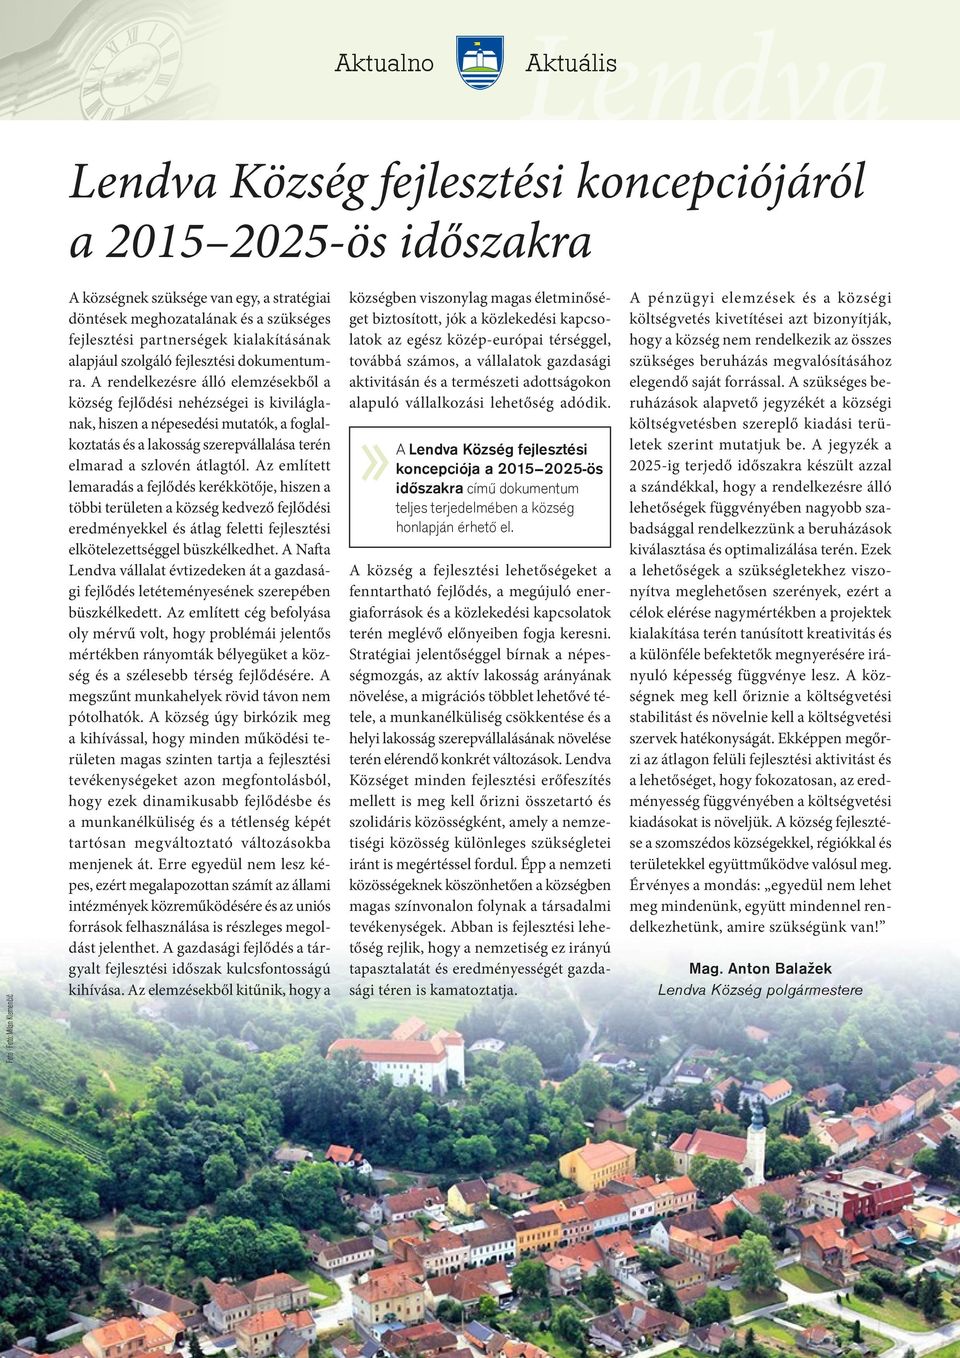 A rendelkezésre álló elemzésekből a község fejlődési nehézségei is kiviláglanak, hiszen a népesedési mutatók, a foglalkoztatás és a lakosság szerepvállalása terén elmarad a szlovén átlagtól.